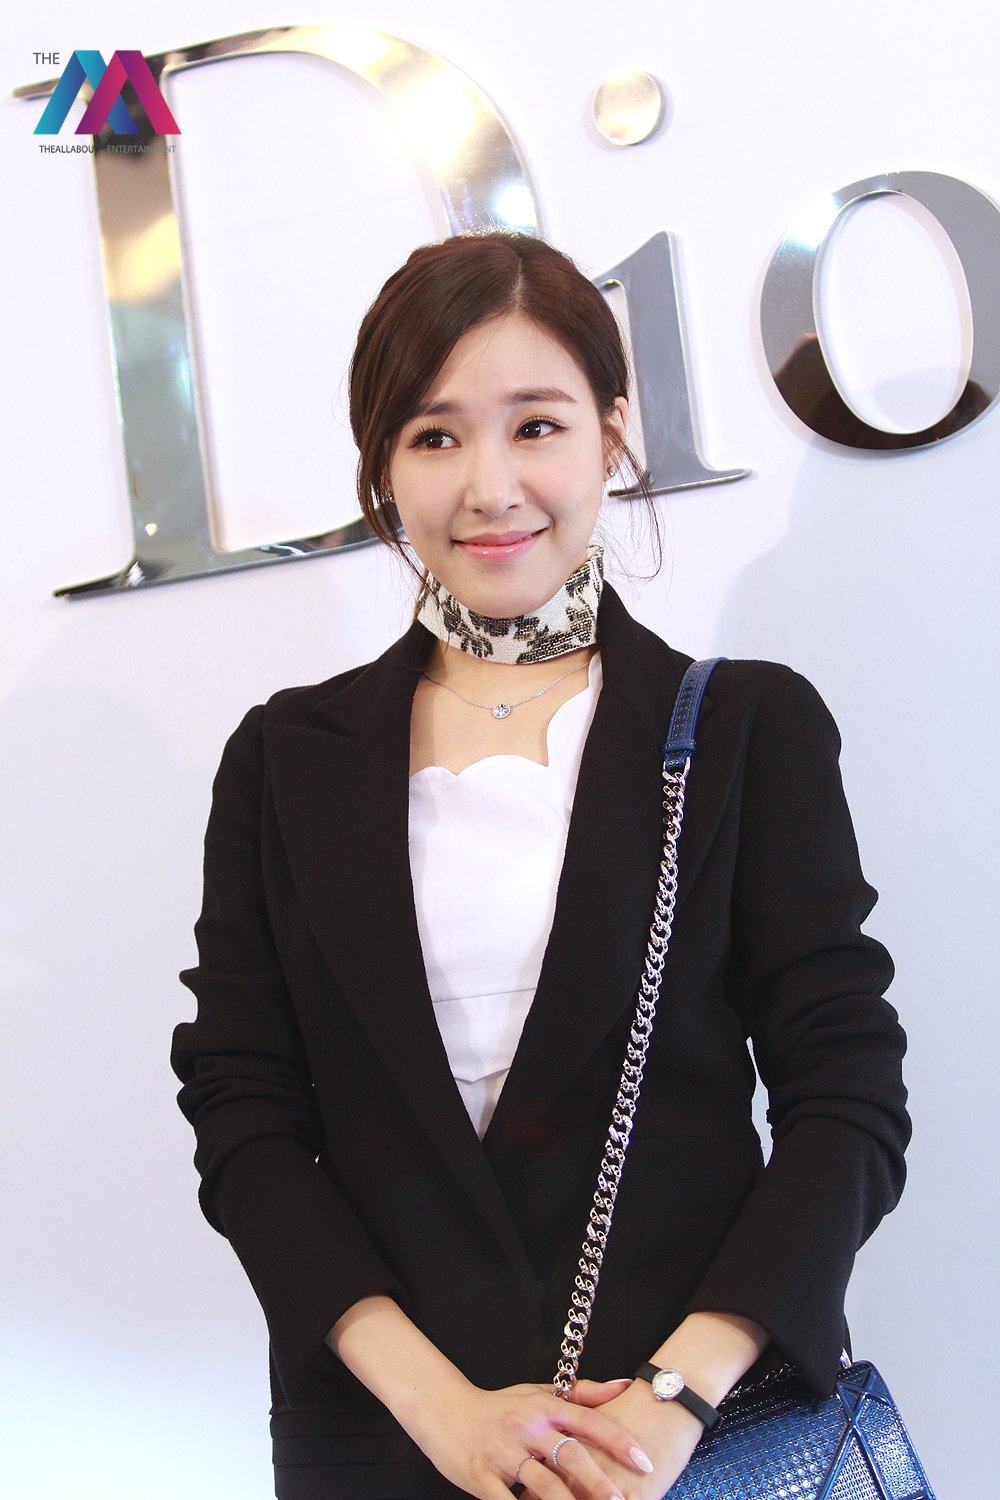 [PIC][17-02-2016]Tiffany khởi hành đi Thái Lan để tham dự sự kiện khai trương chi nhánh của thương hiệu "Christian Dior" vào hôm nay - Page 8 KjMFpc7X-c-3000x3000